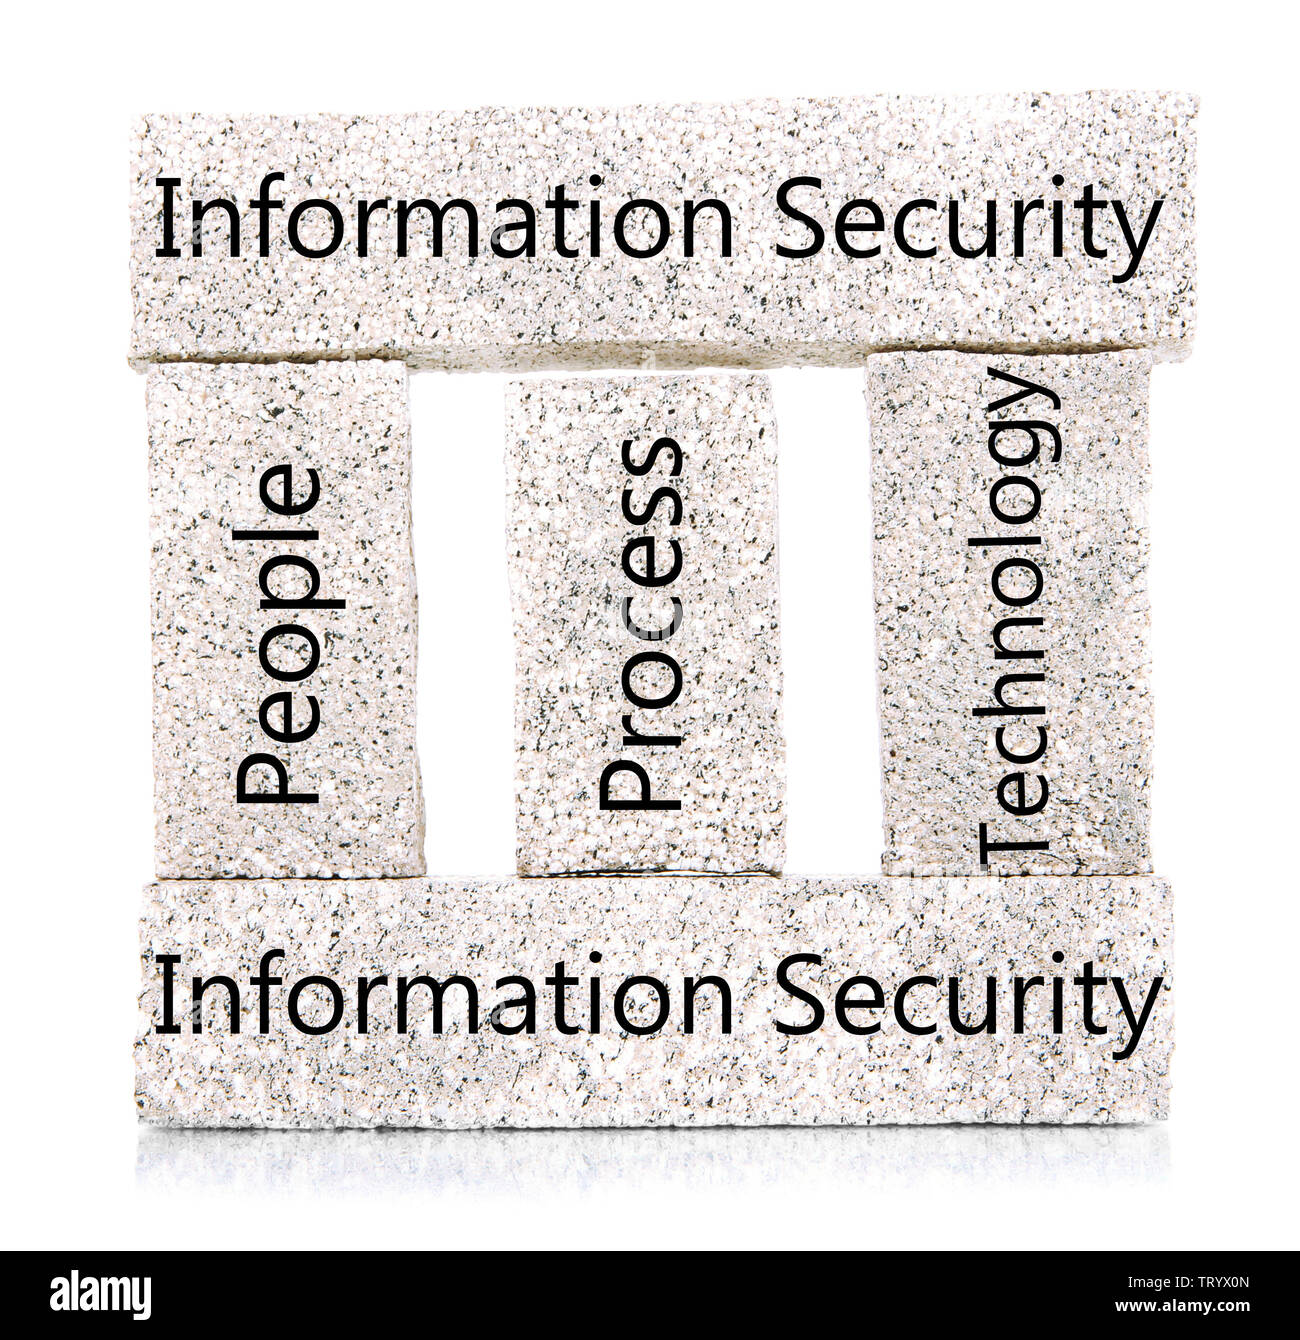 Blocs de construction de la sécurité de l'information isolated on white Banque D'Images